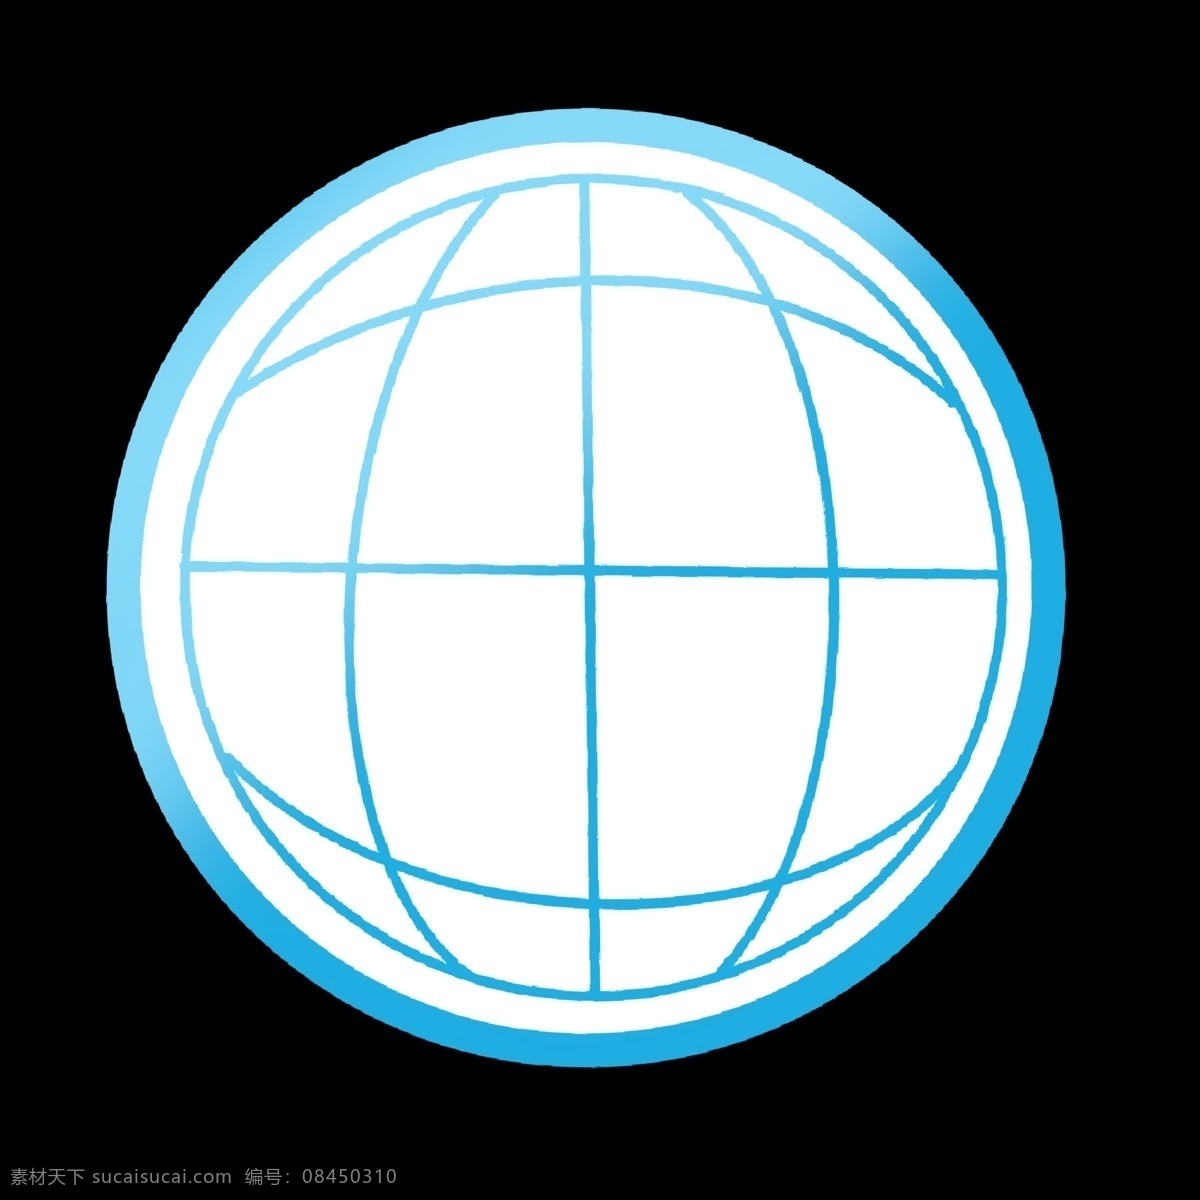 蓝色 地球 样式 名片 图标 冷色 渐变 地球矢量图 寻找 地址 网络 联网 简洁 抽象 卡通 名片使用